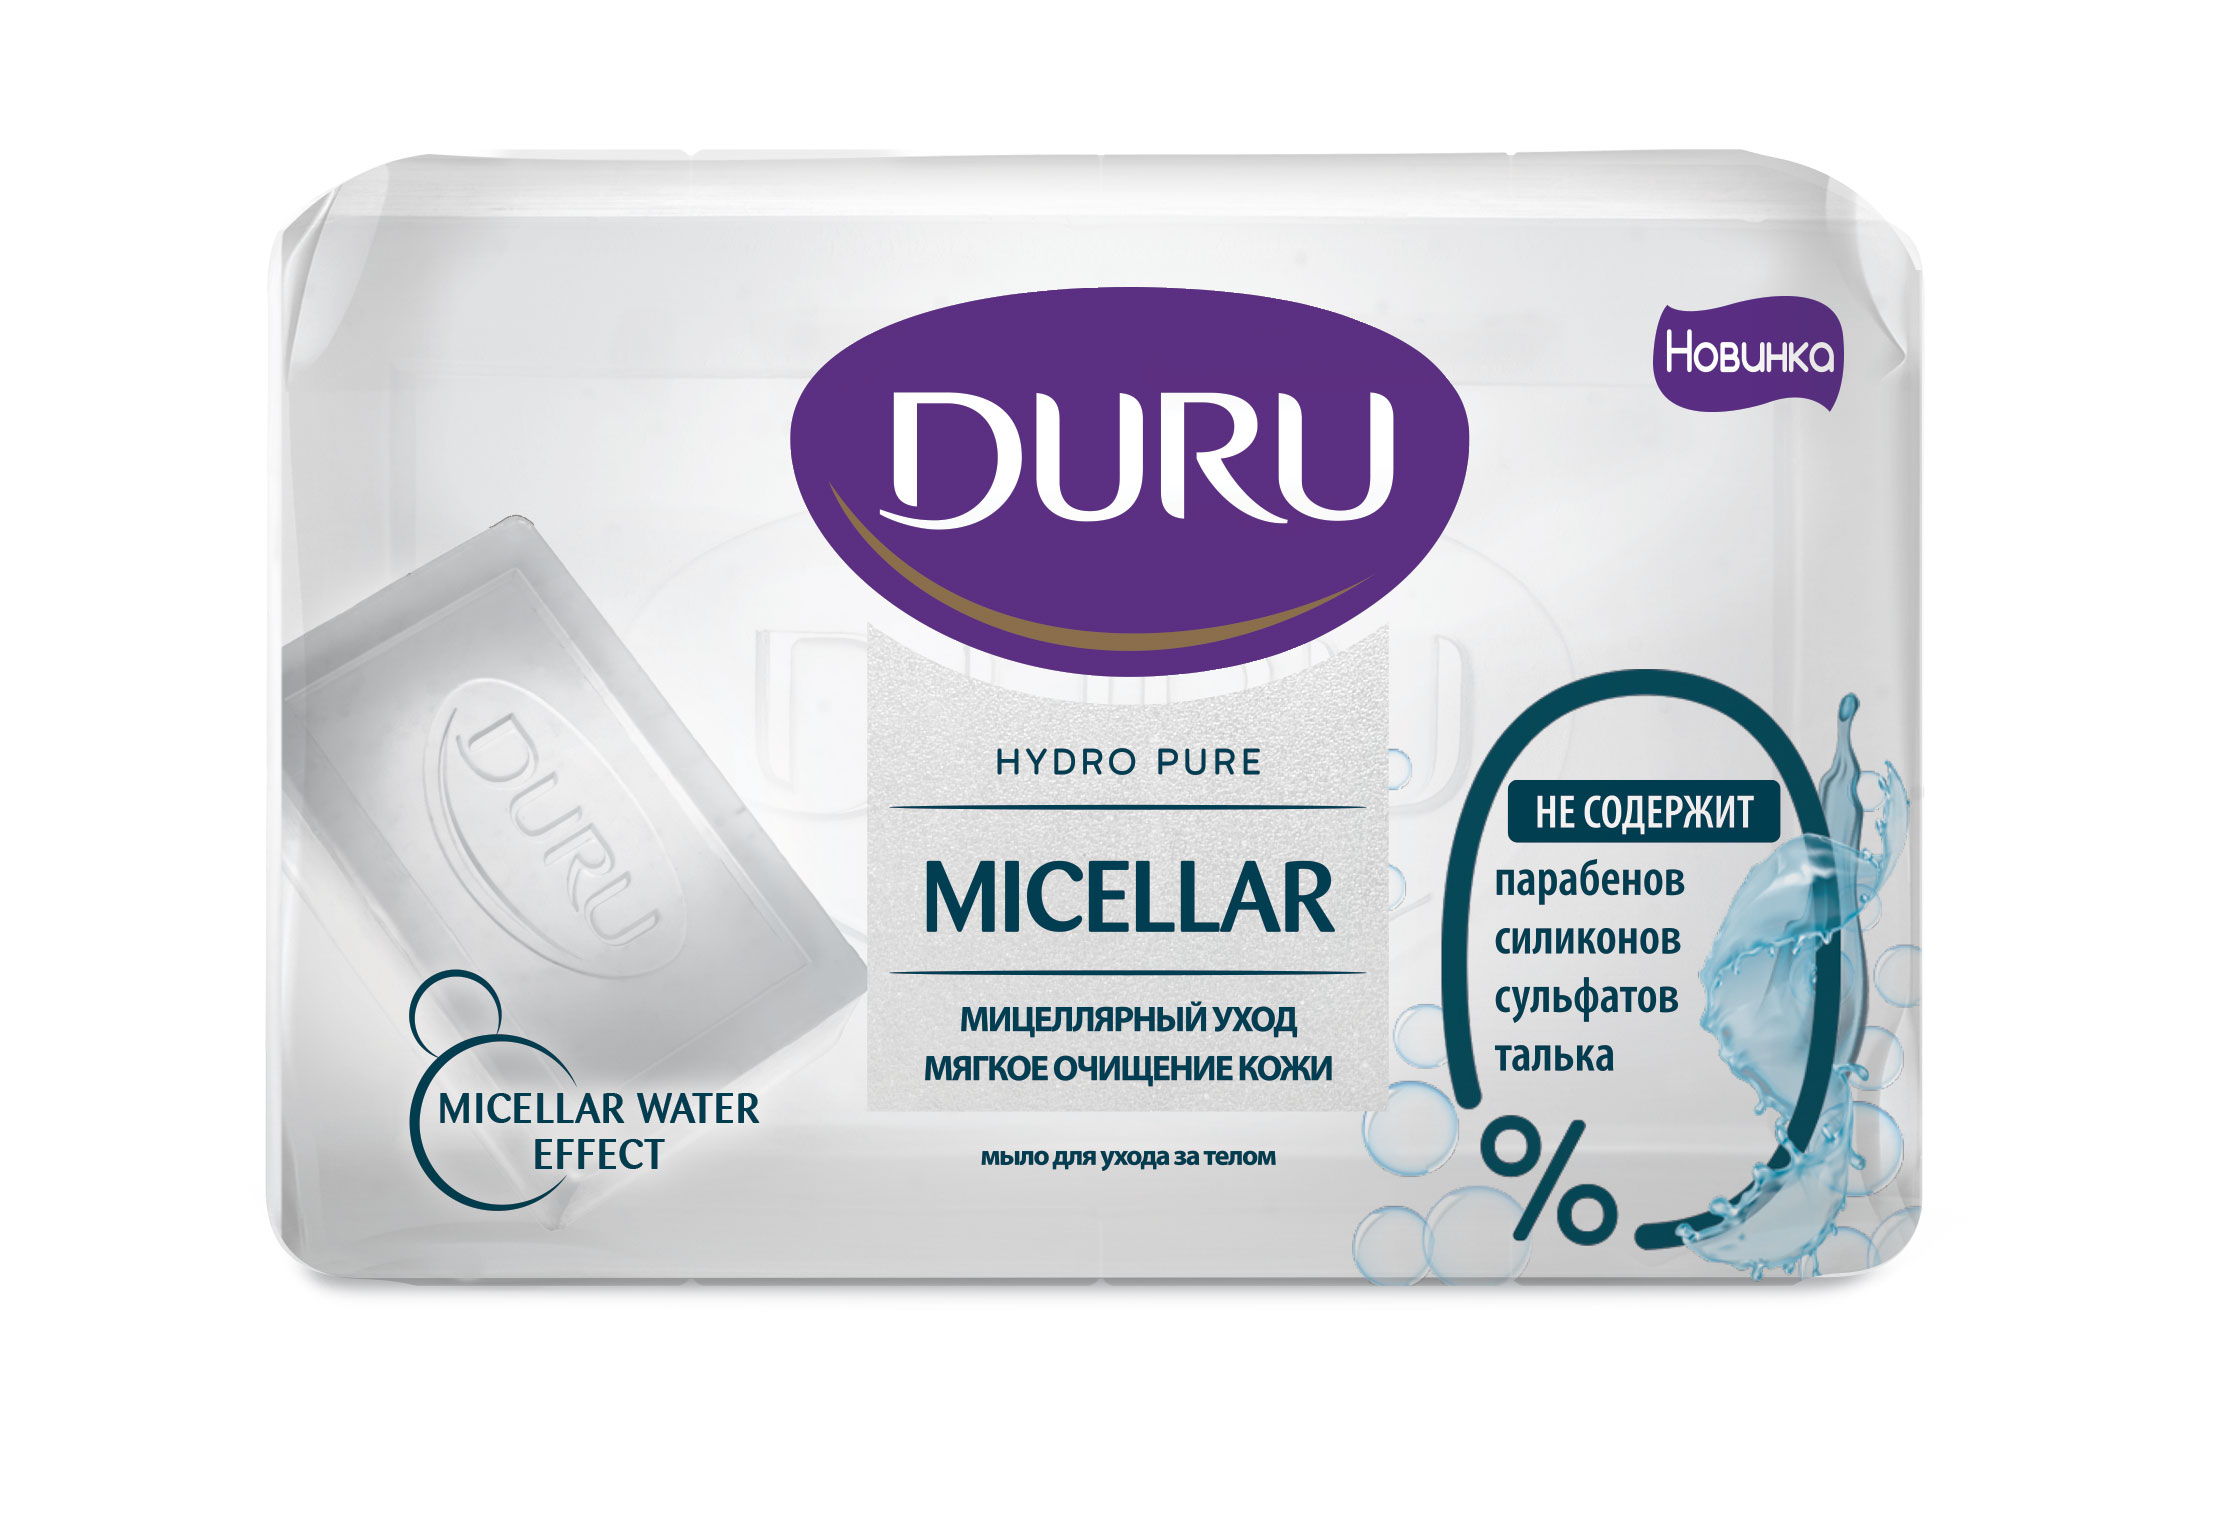 Мыло мицеллярное Duru, HYDRO PURE,  110 г мыло duru hydro pure лепестки сакуры 106 г косметическое